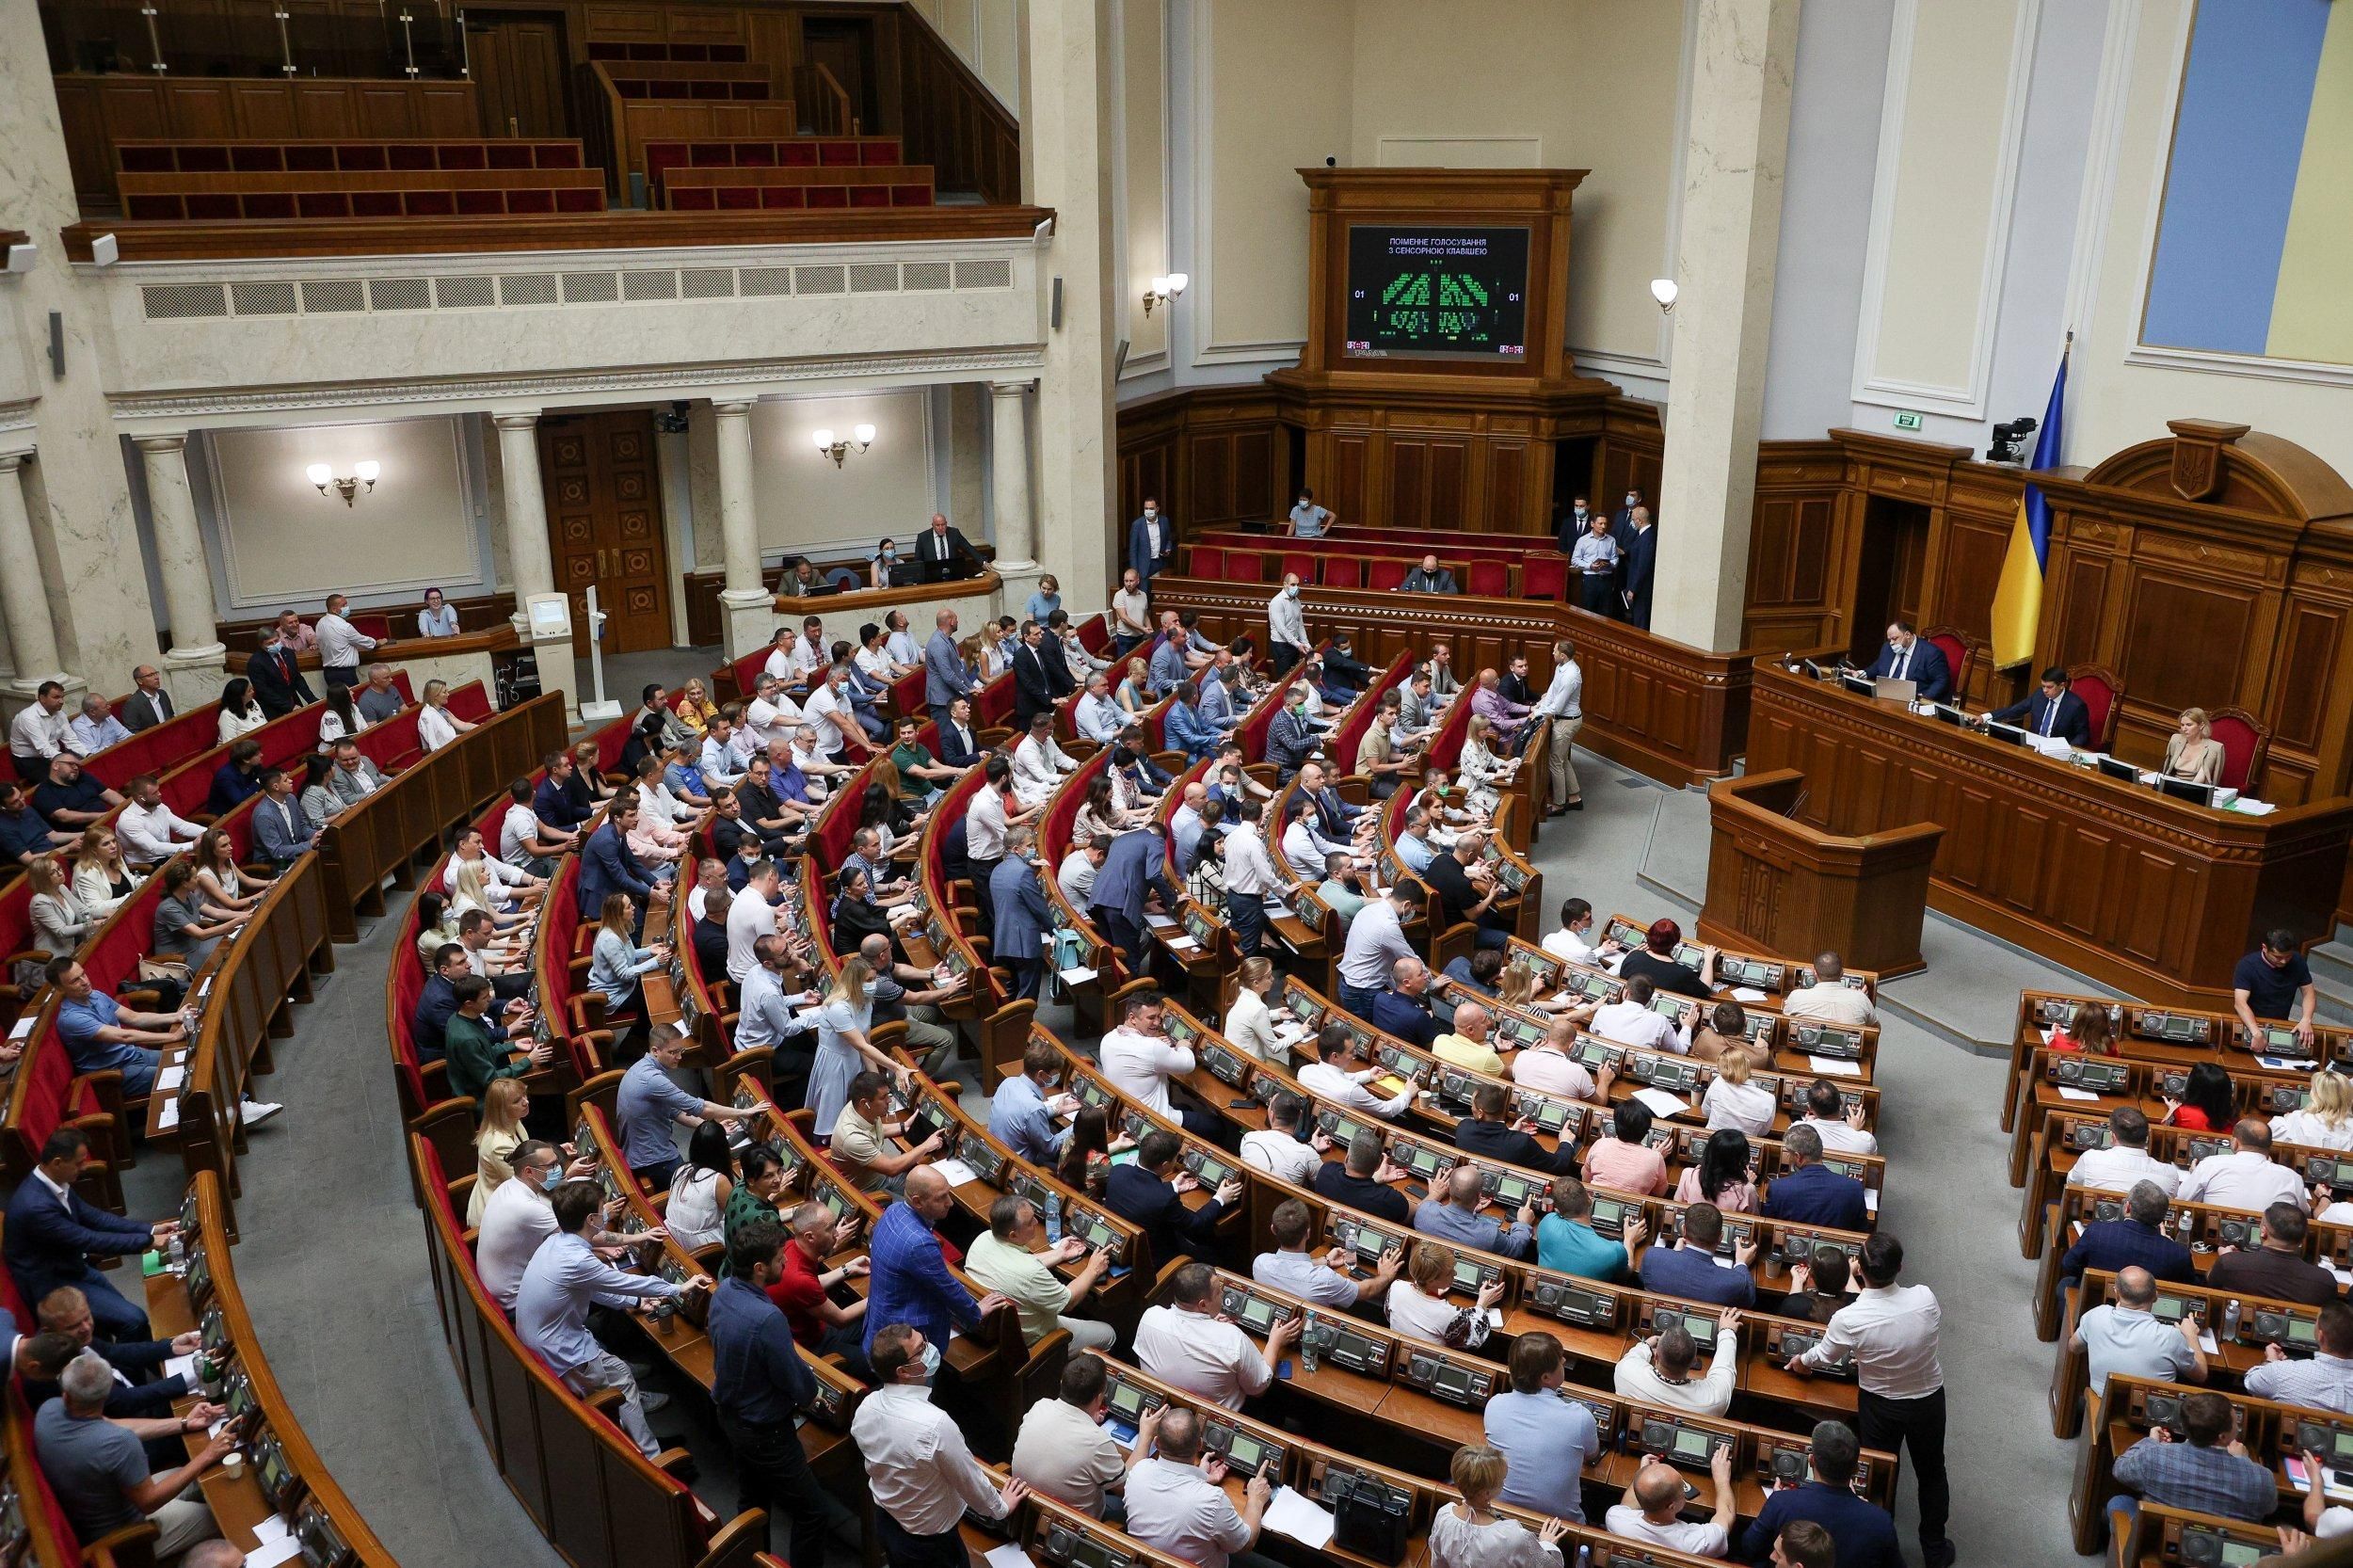 "Просимо, щоб депутати вгамувалися": у Раді підприємців звернулися до парламенту через податки - Економічні новини України - Економіка